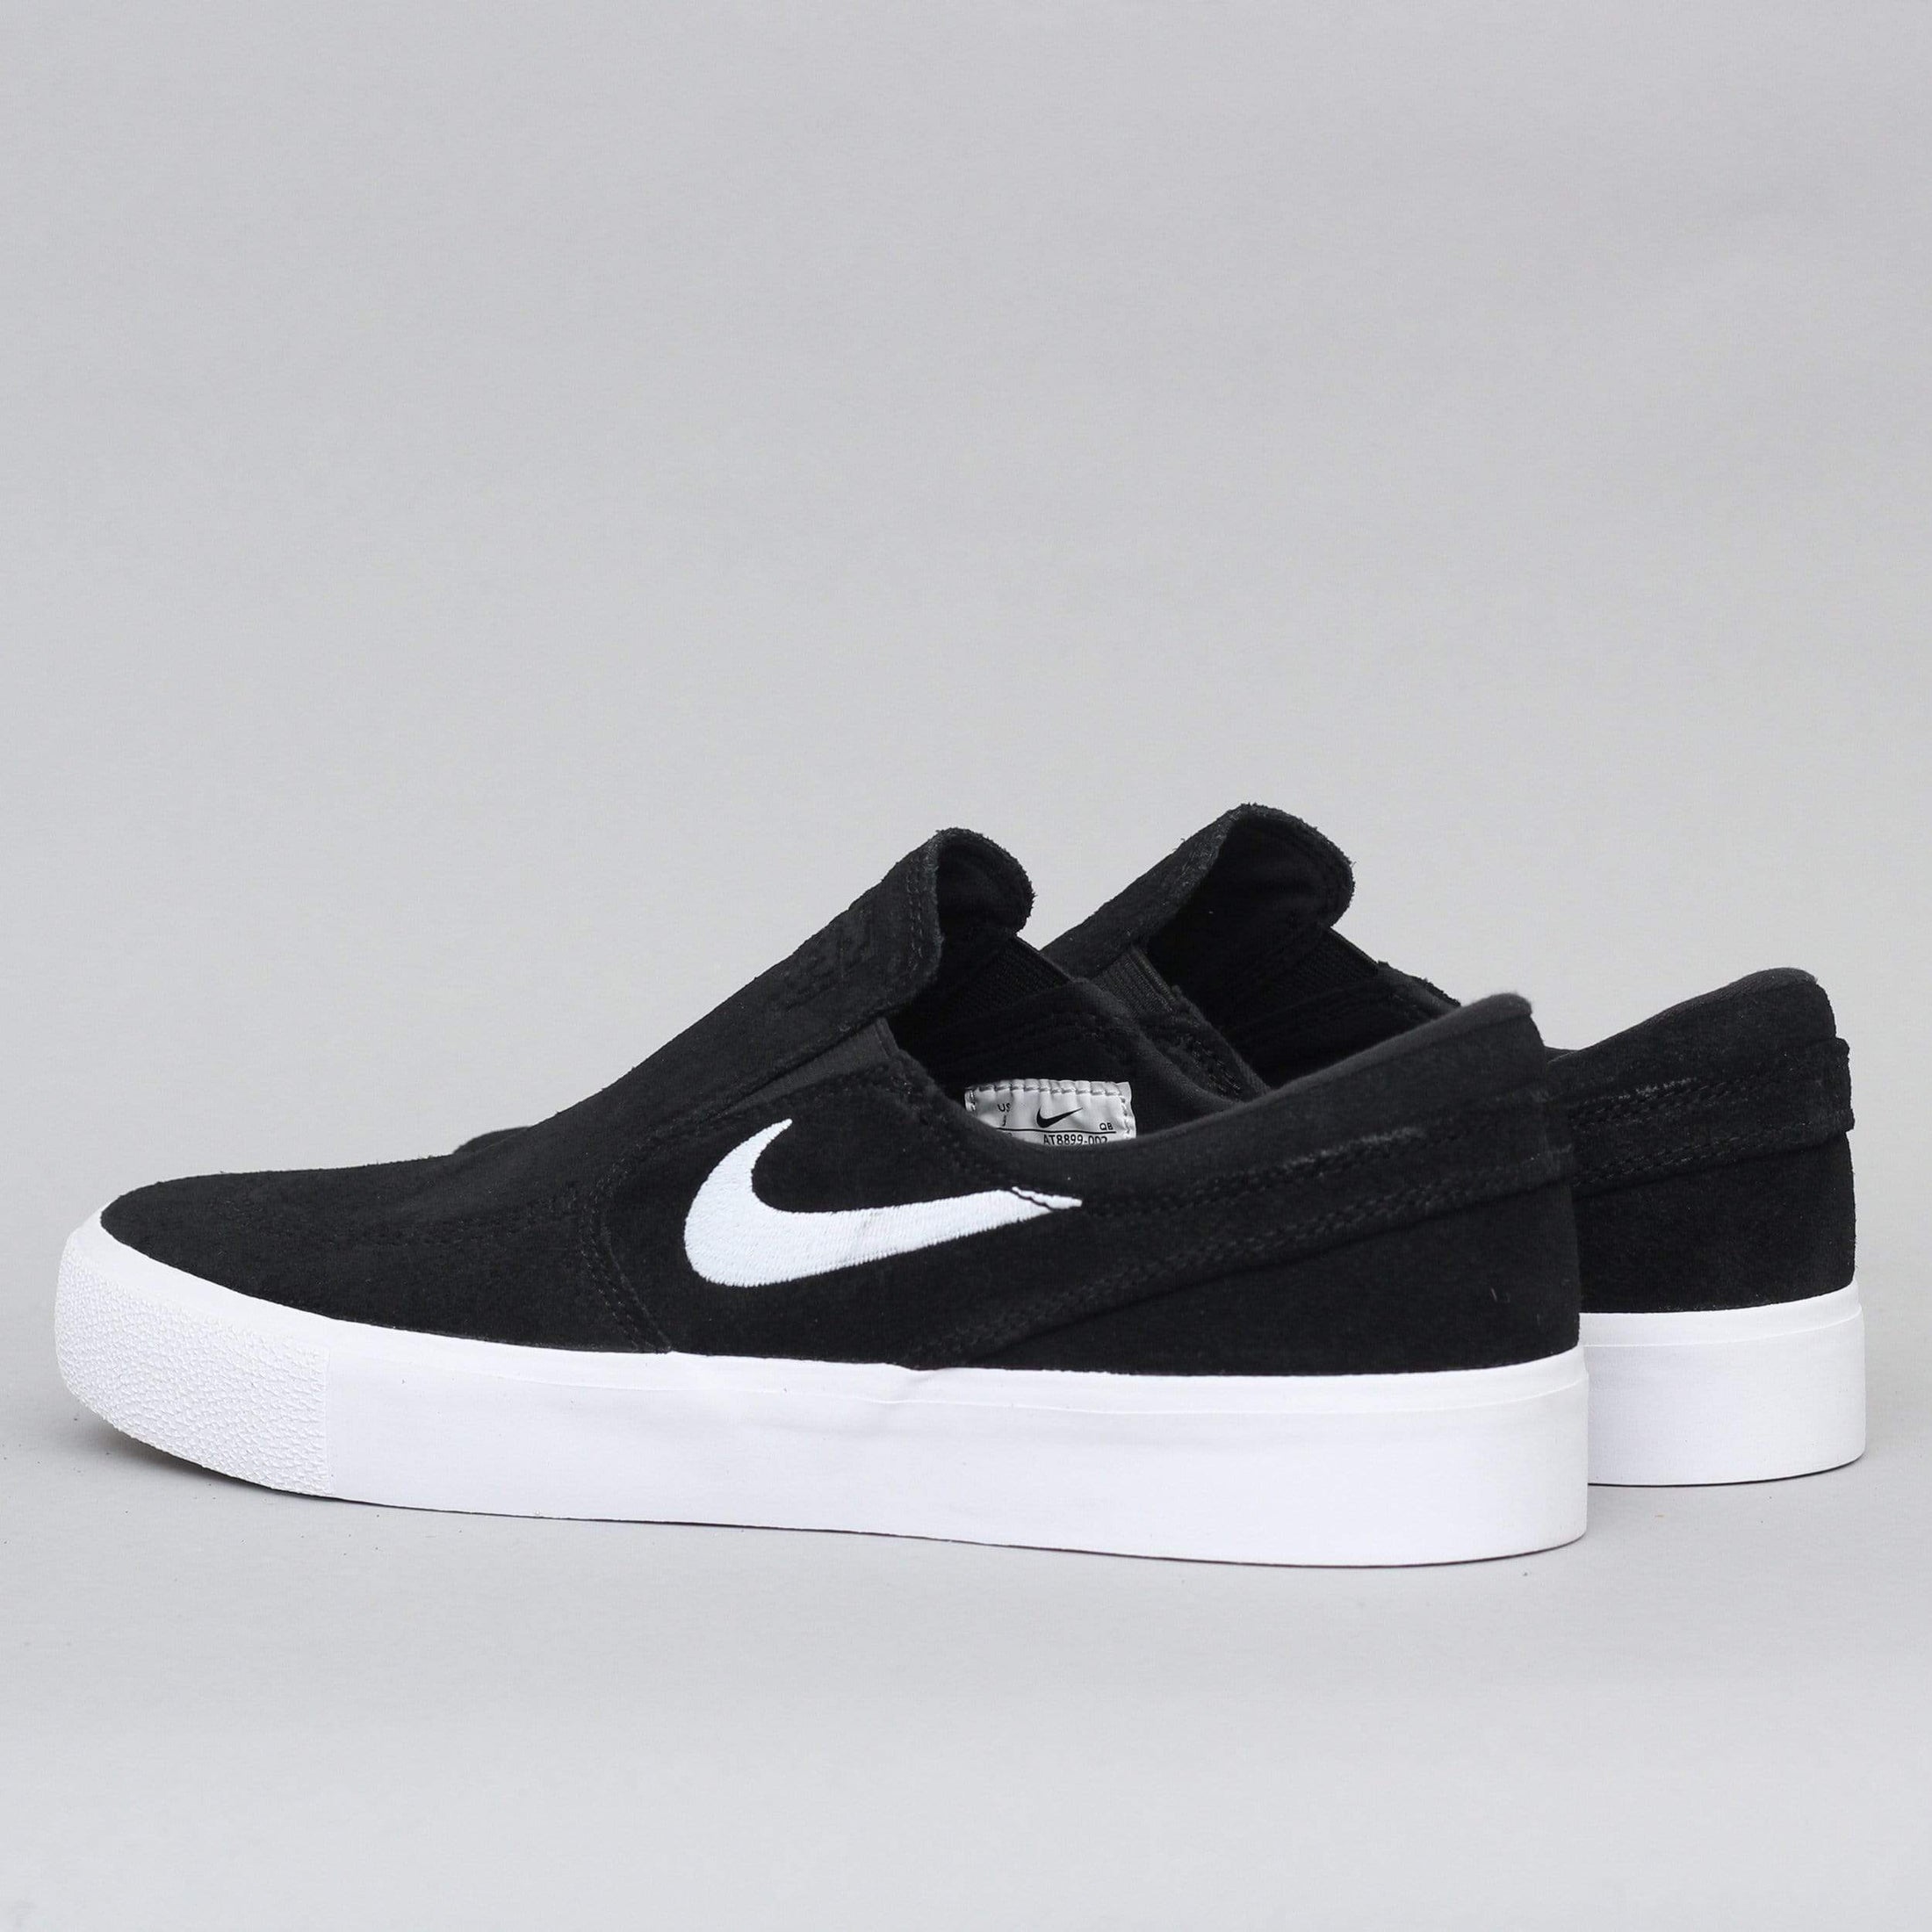 Nike SB Janoski Slip RM Shoes Black / White - White